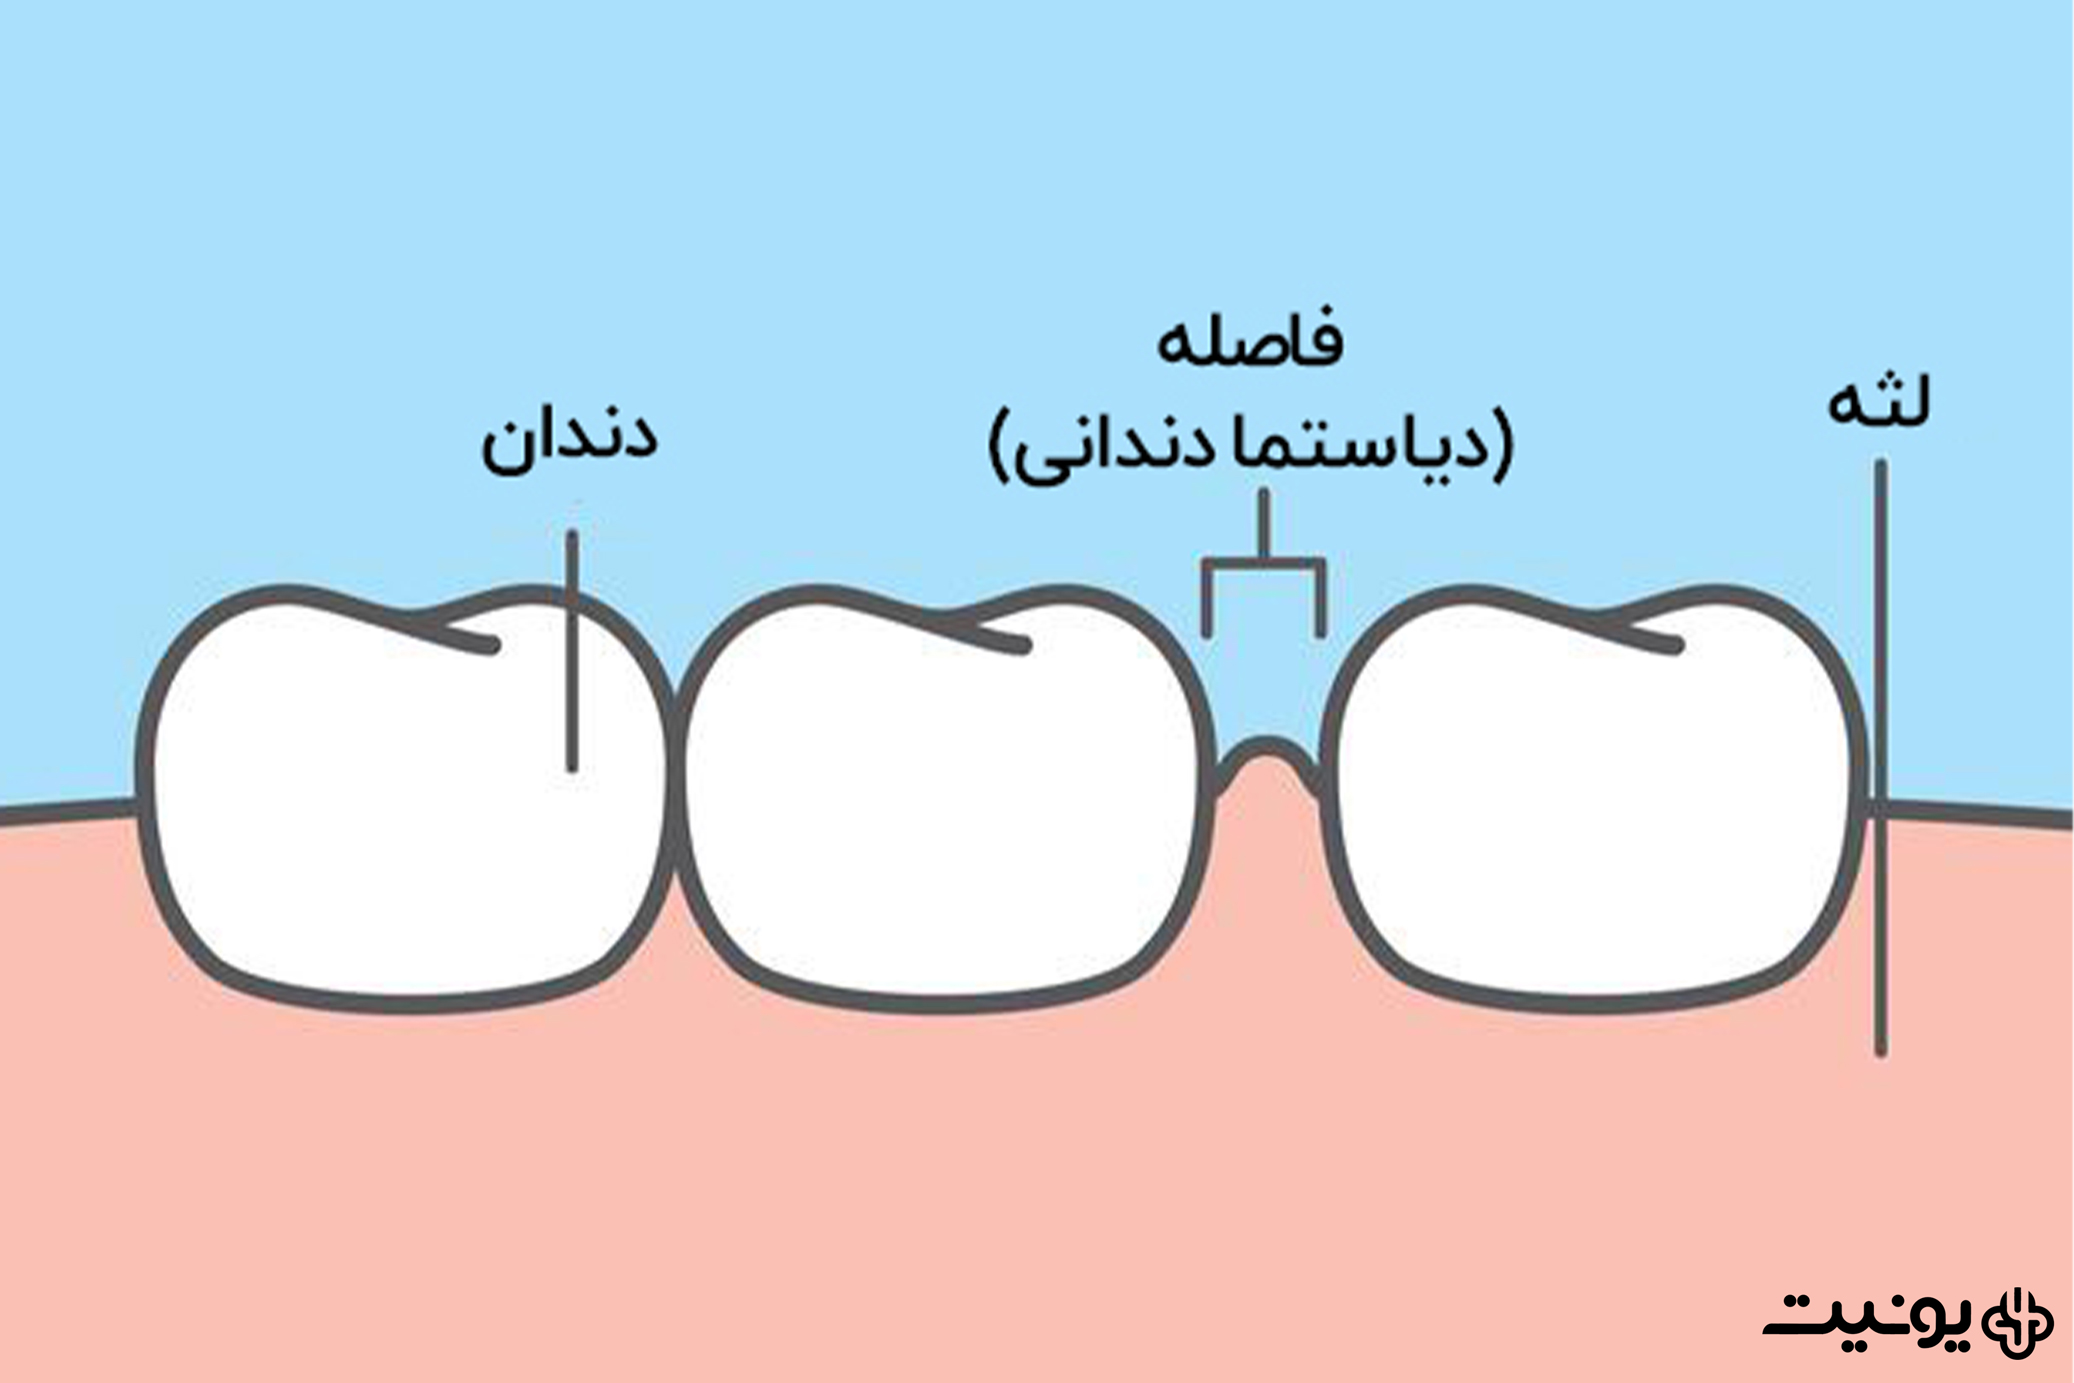 دیاستما یا فاصله بین دندانی چیست؟